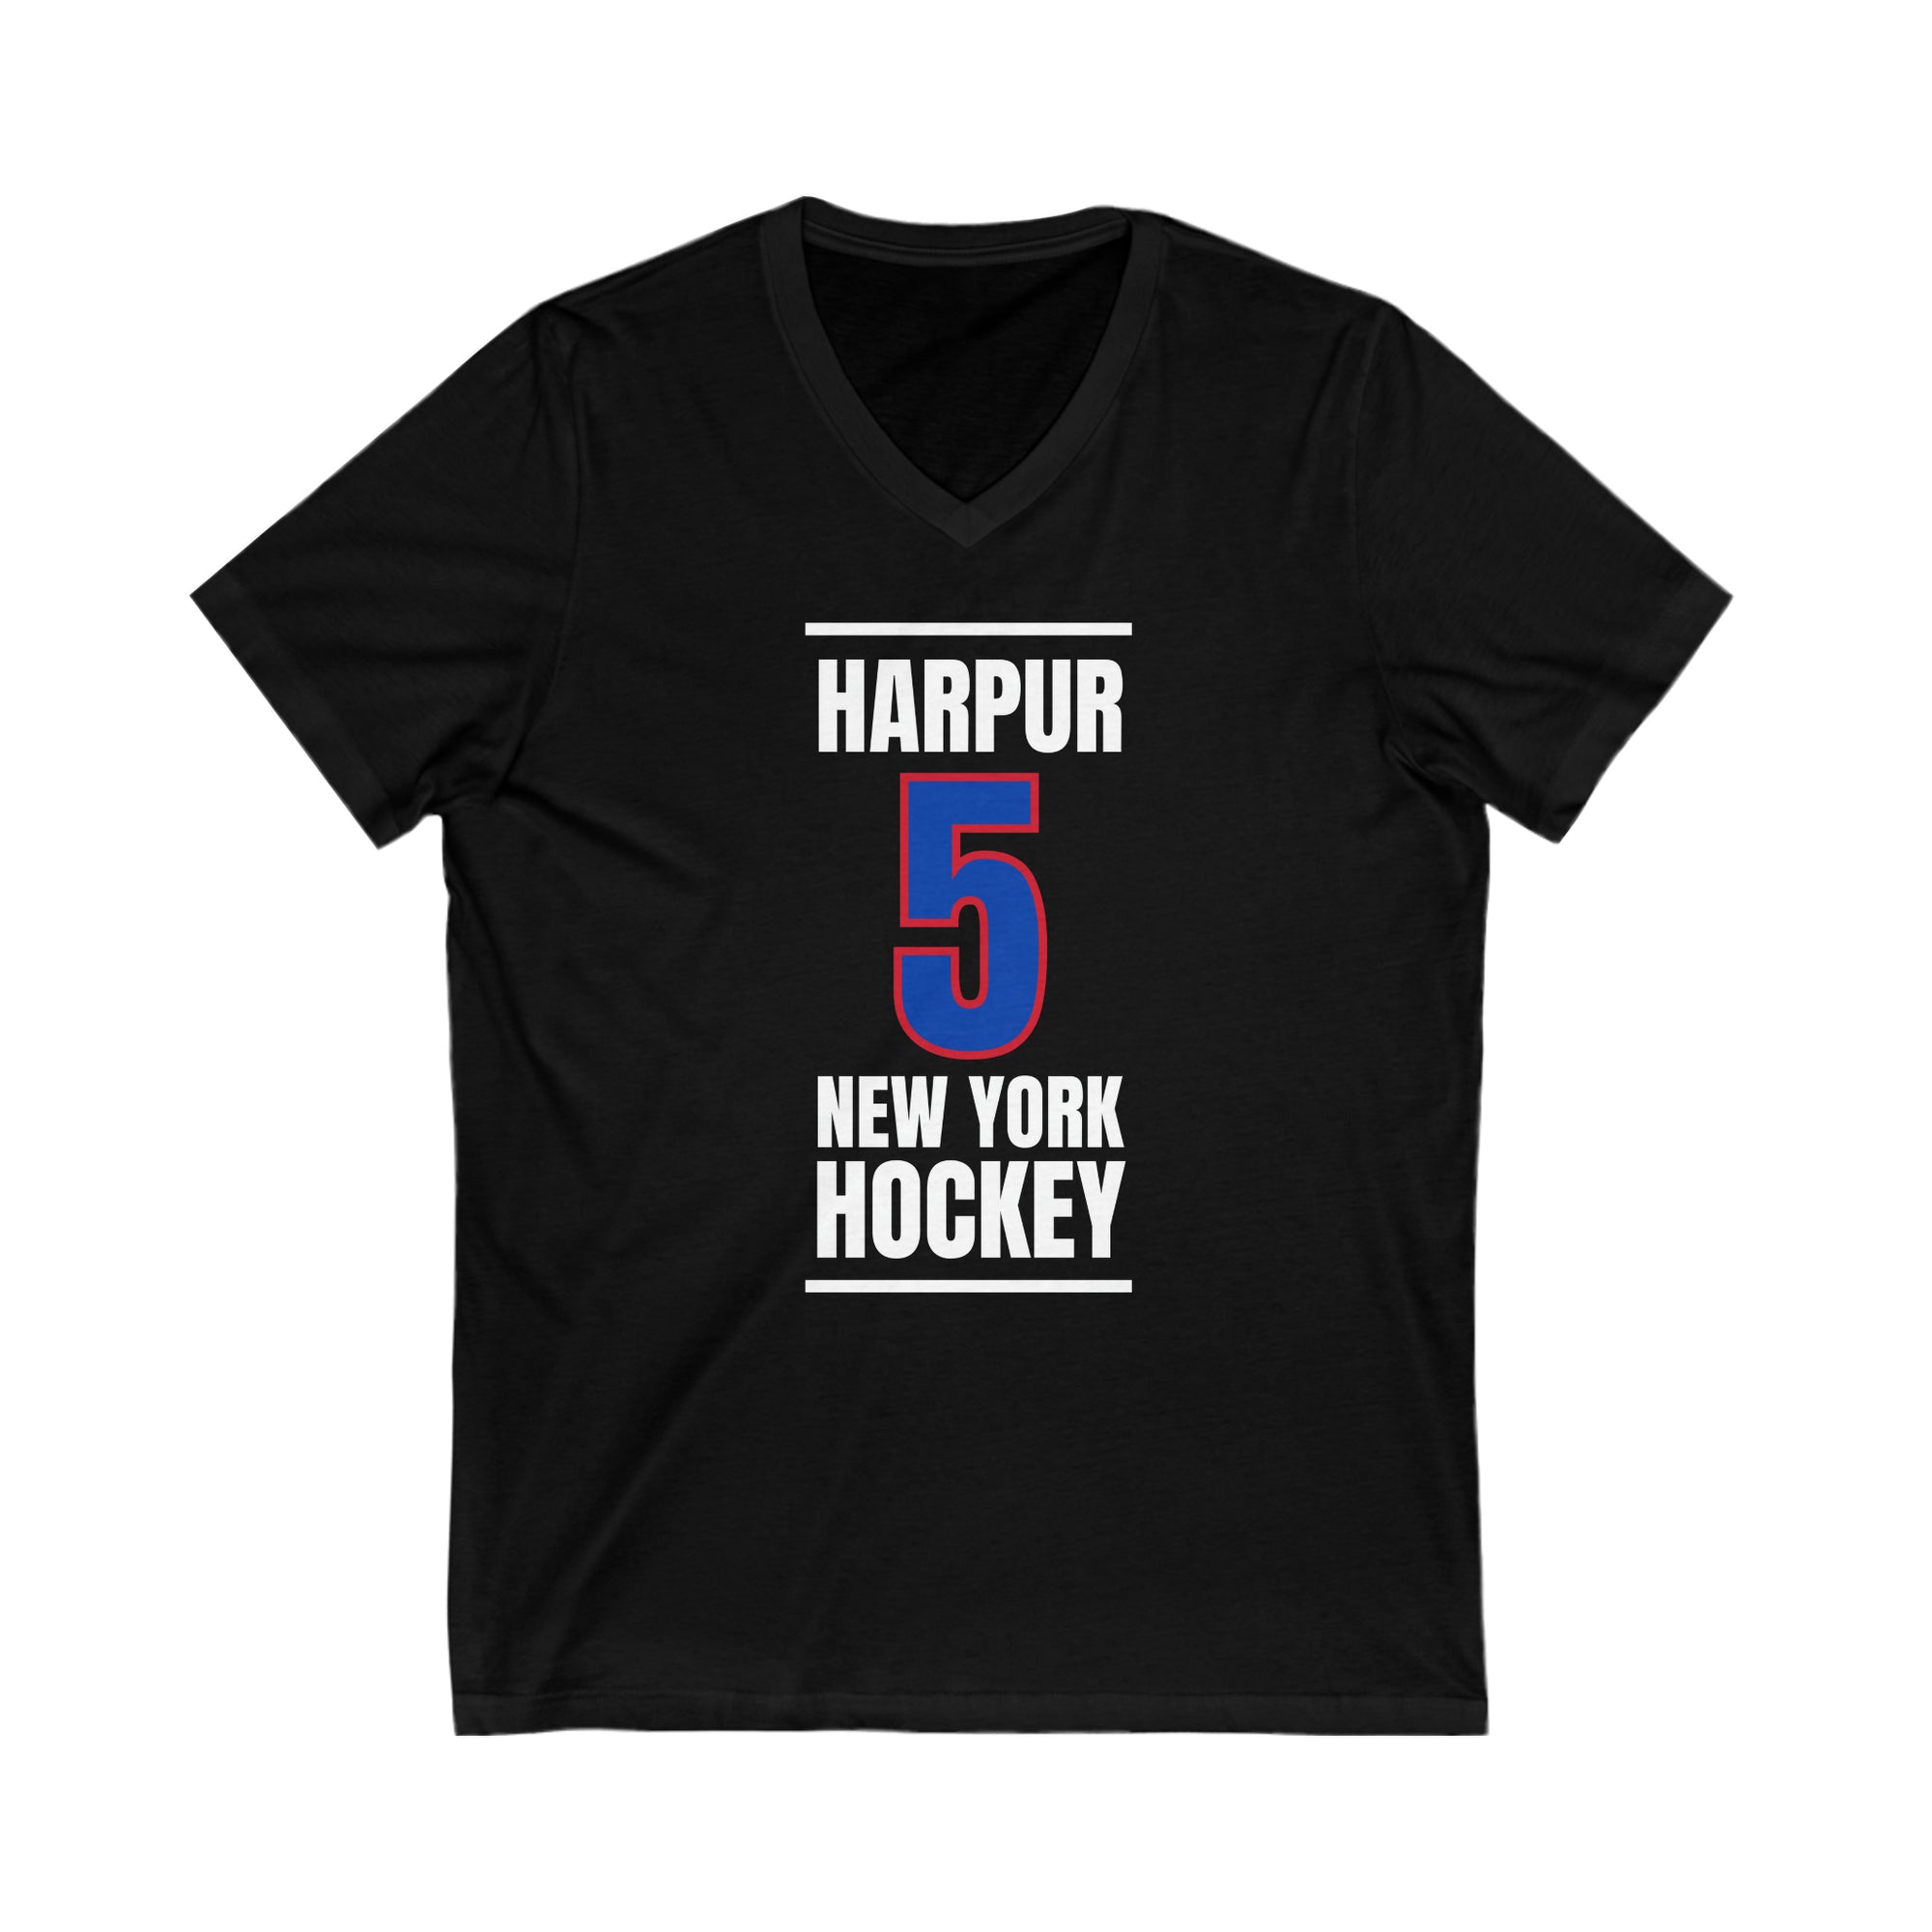 Harpur 5 New York Hockey Royal Blue Vertical Design Unisex V-Neck Tee